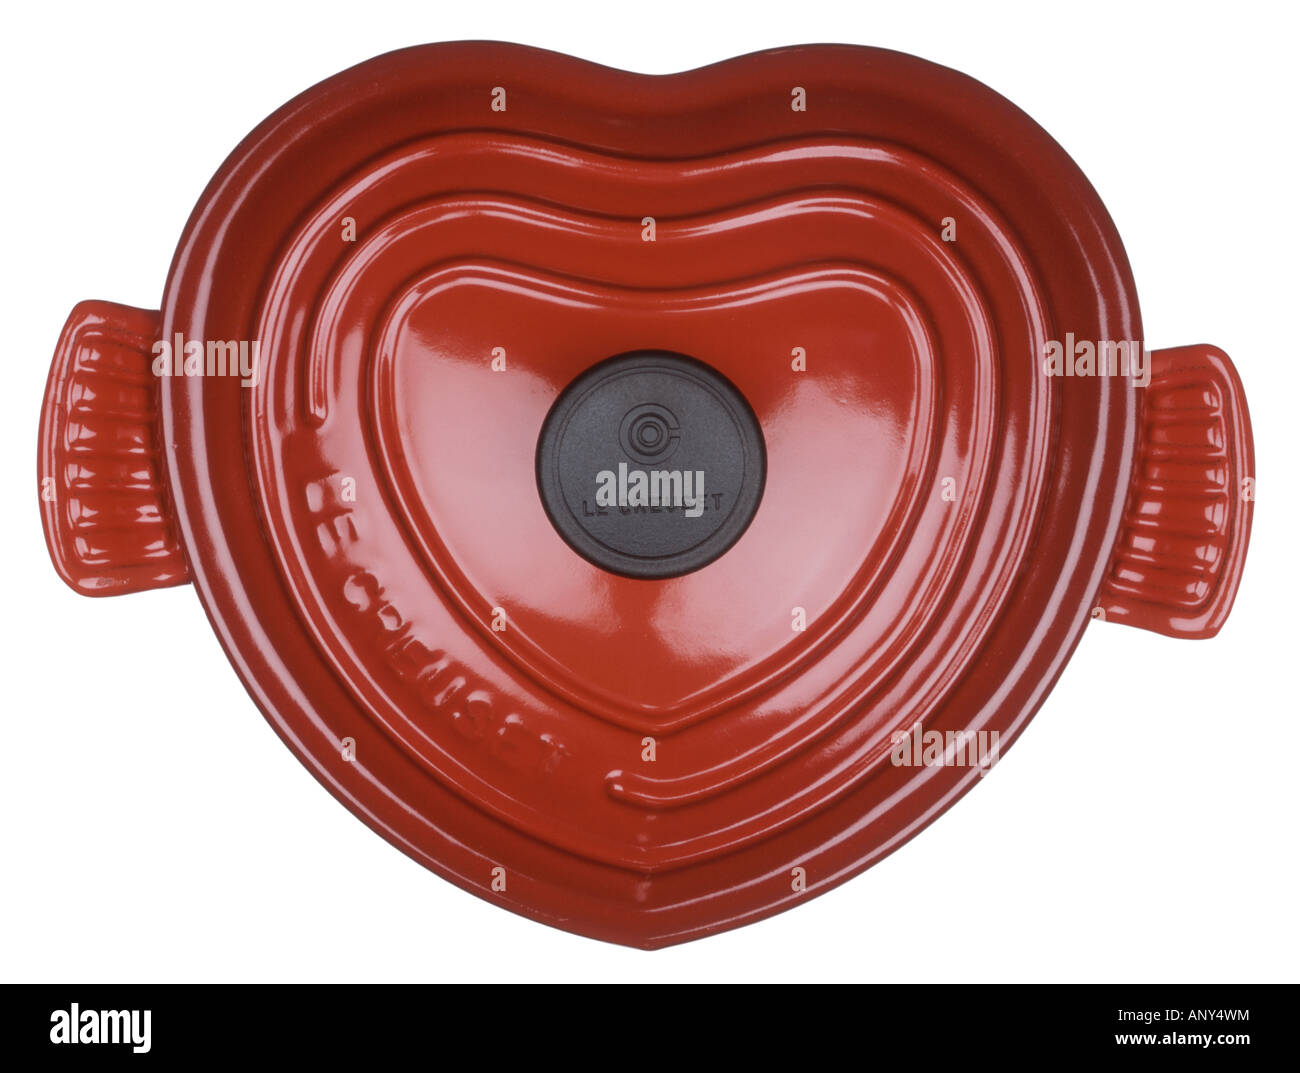 Le Creuset heart shaped oven pot Stock Photo